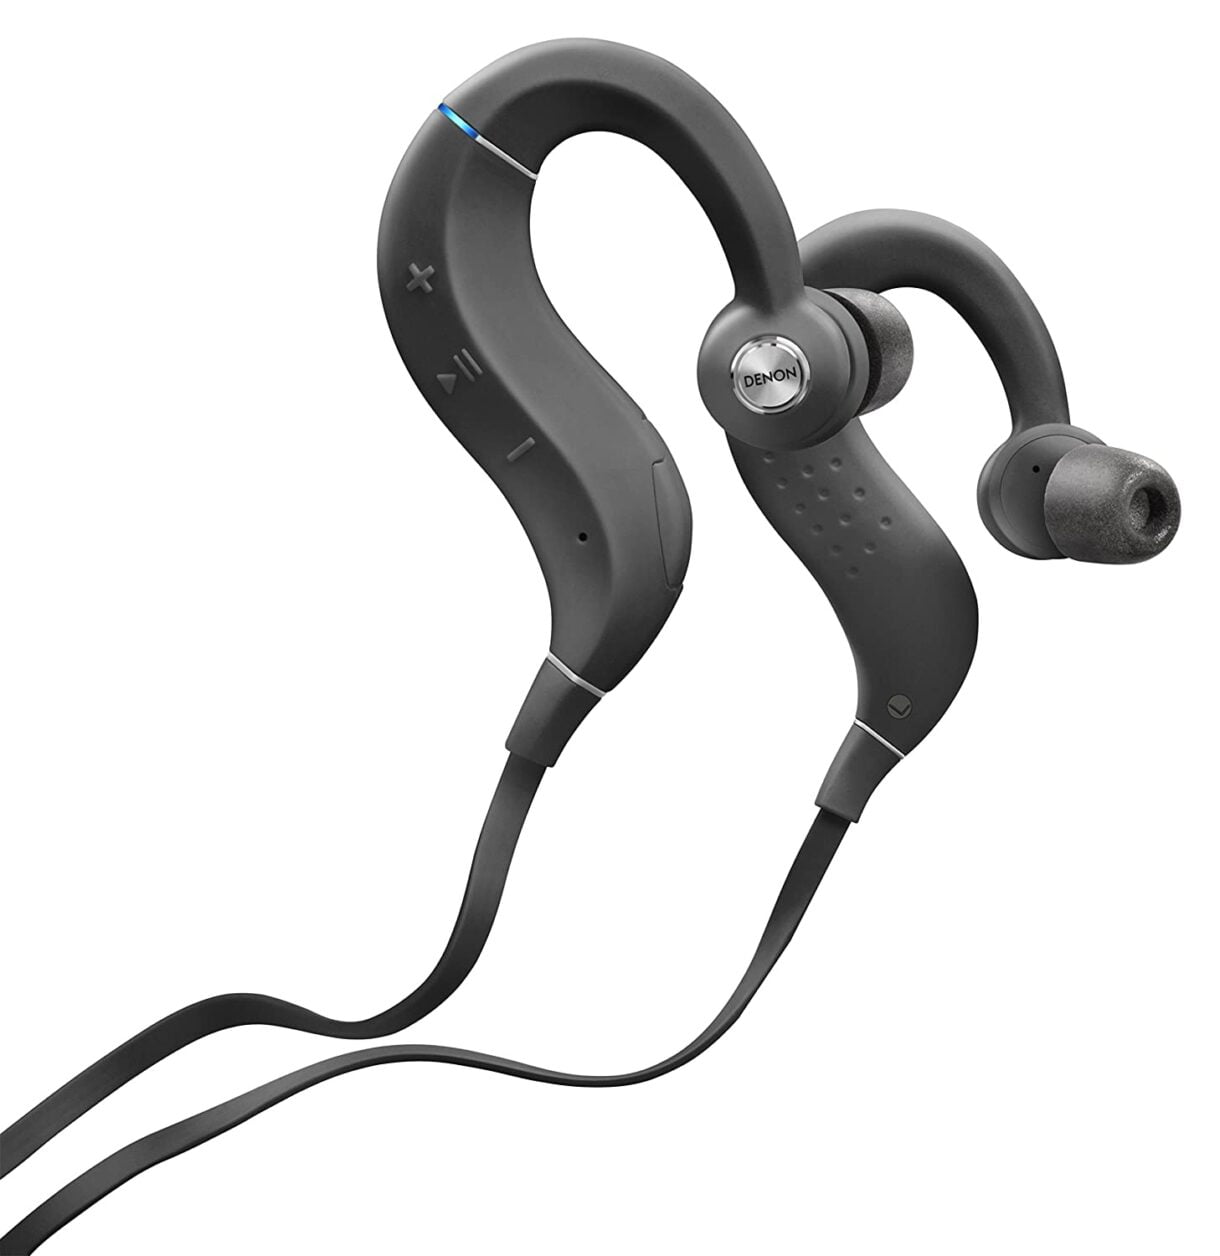 Denon AHC160WBKEM Wireless in-Ear Sports Headphones